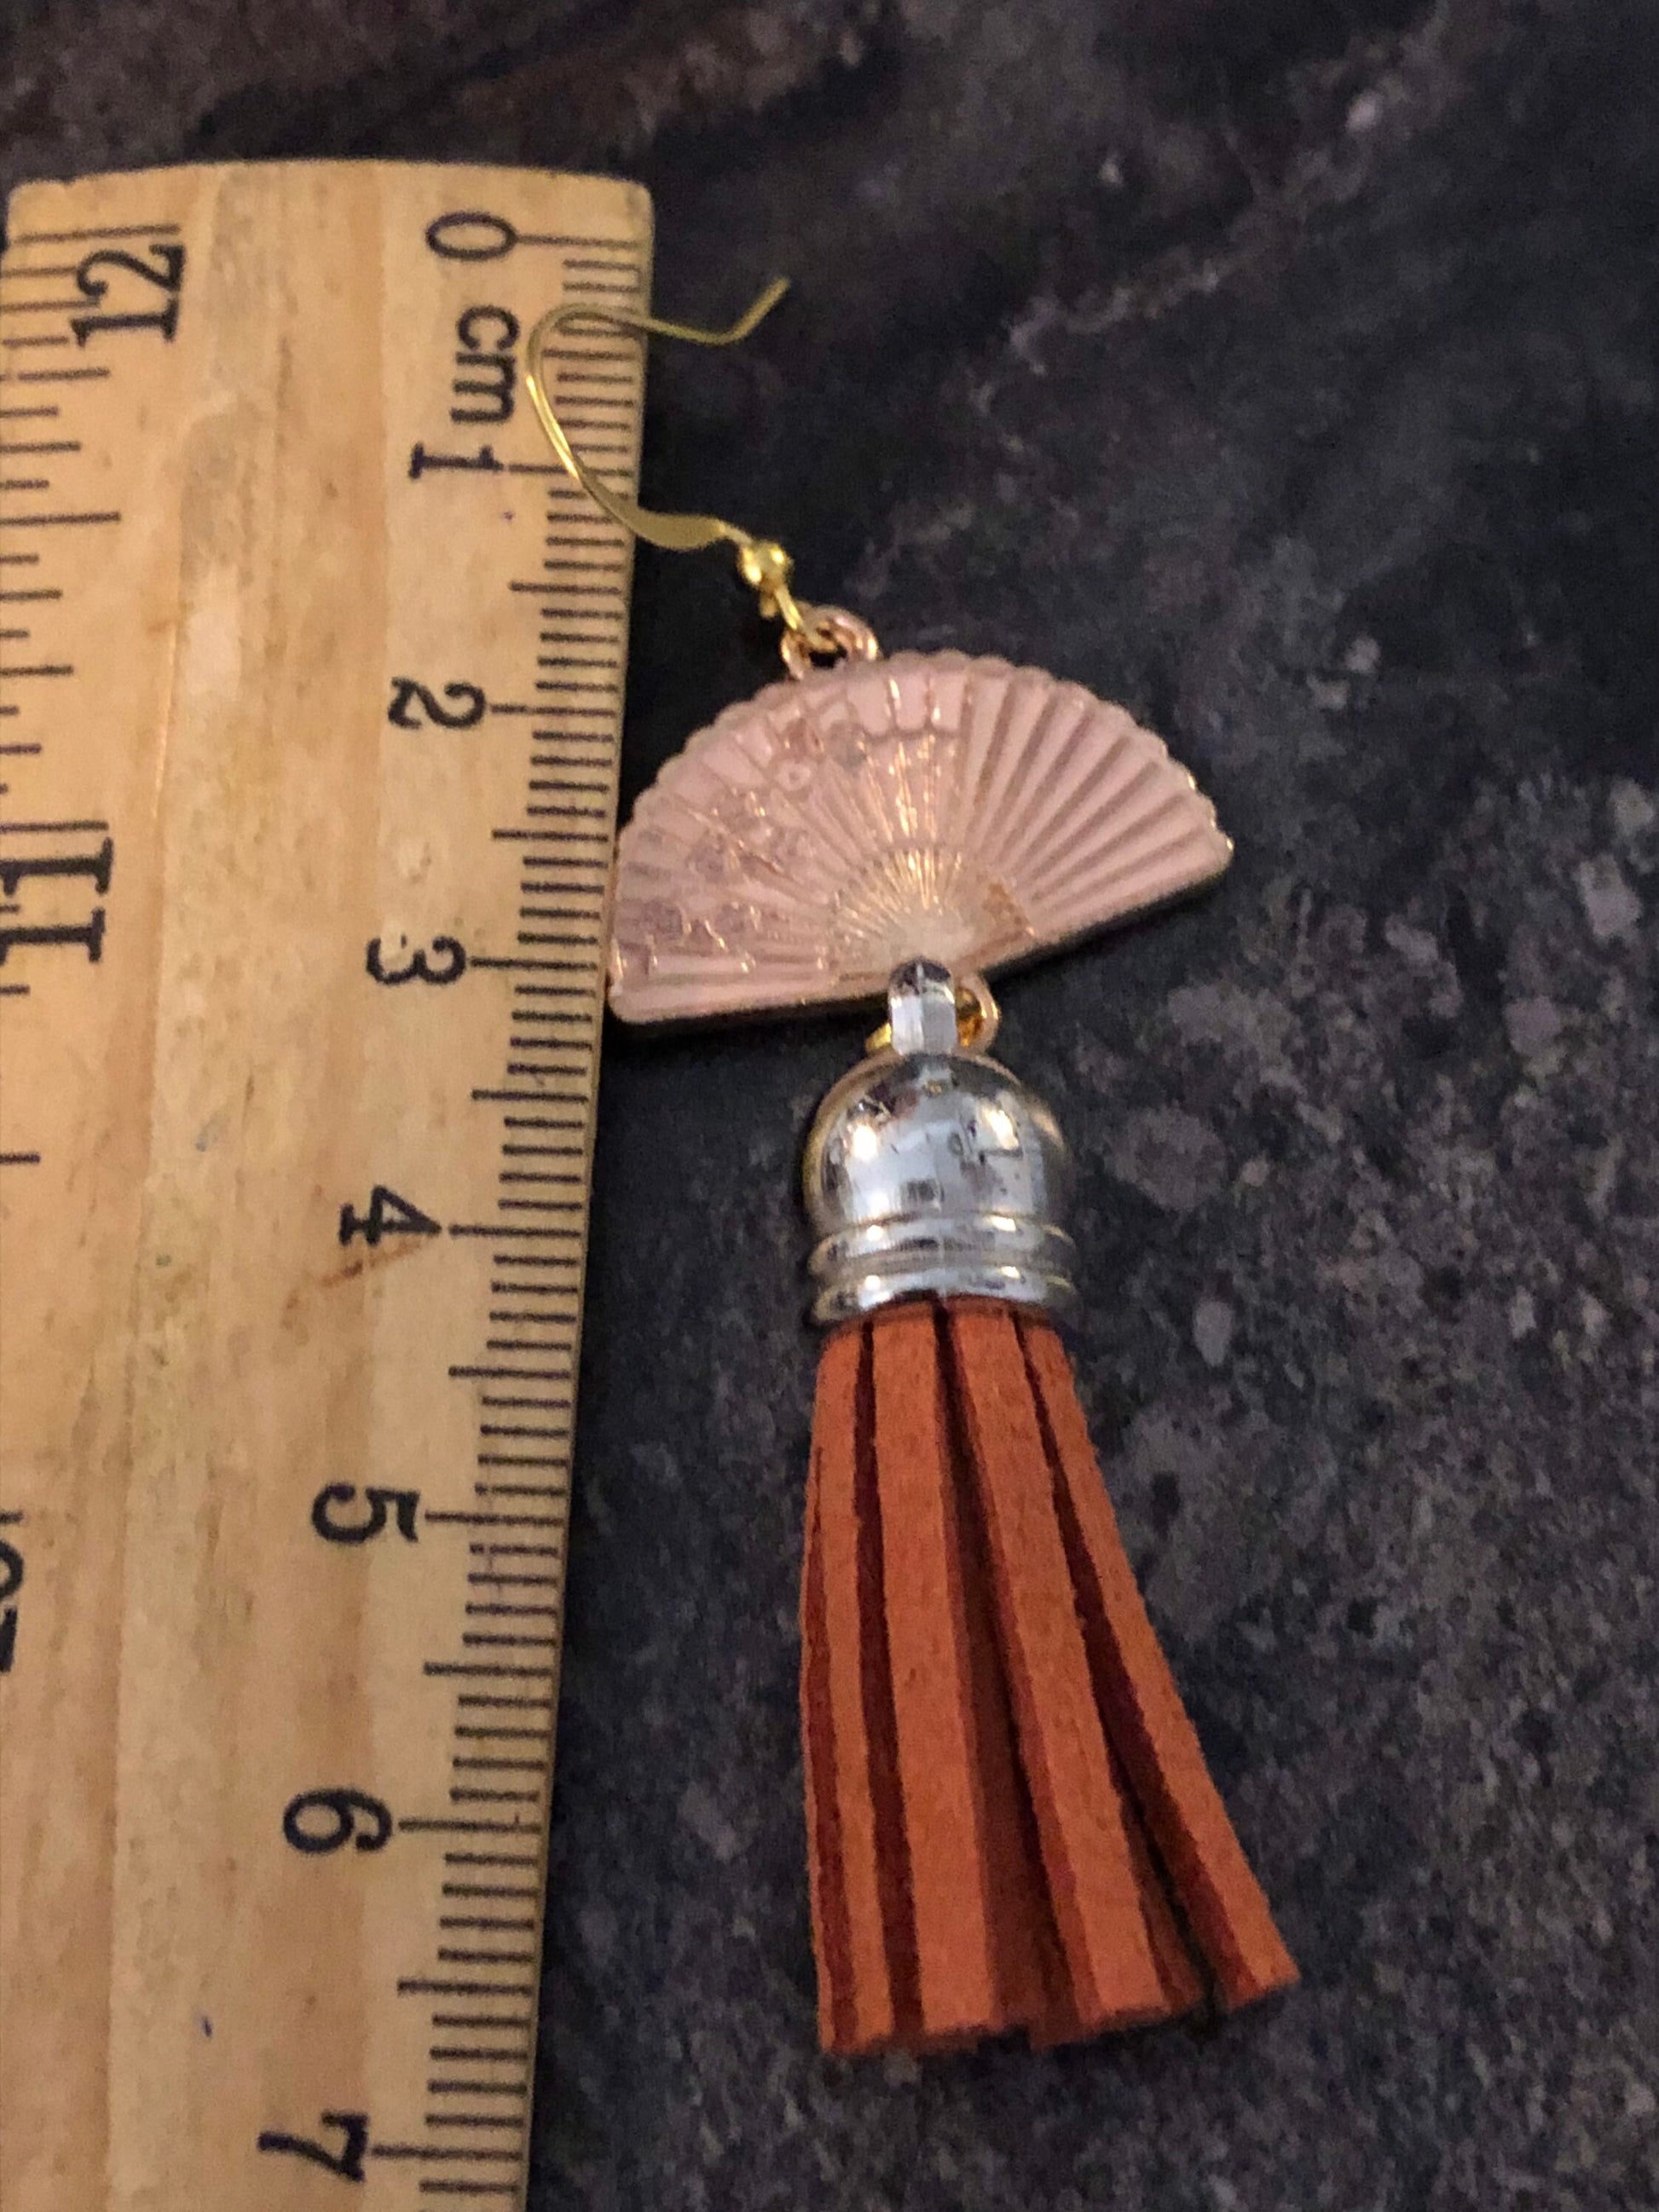 antique Vintage style gold tone oriental Chinese Japanese orange tassel fan earrings pierced